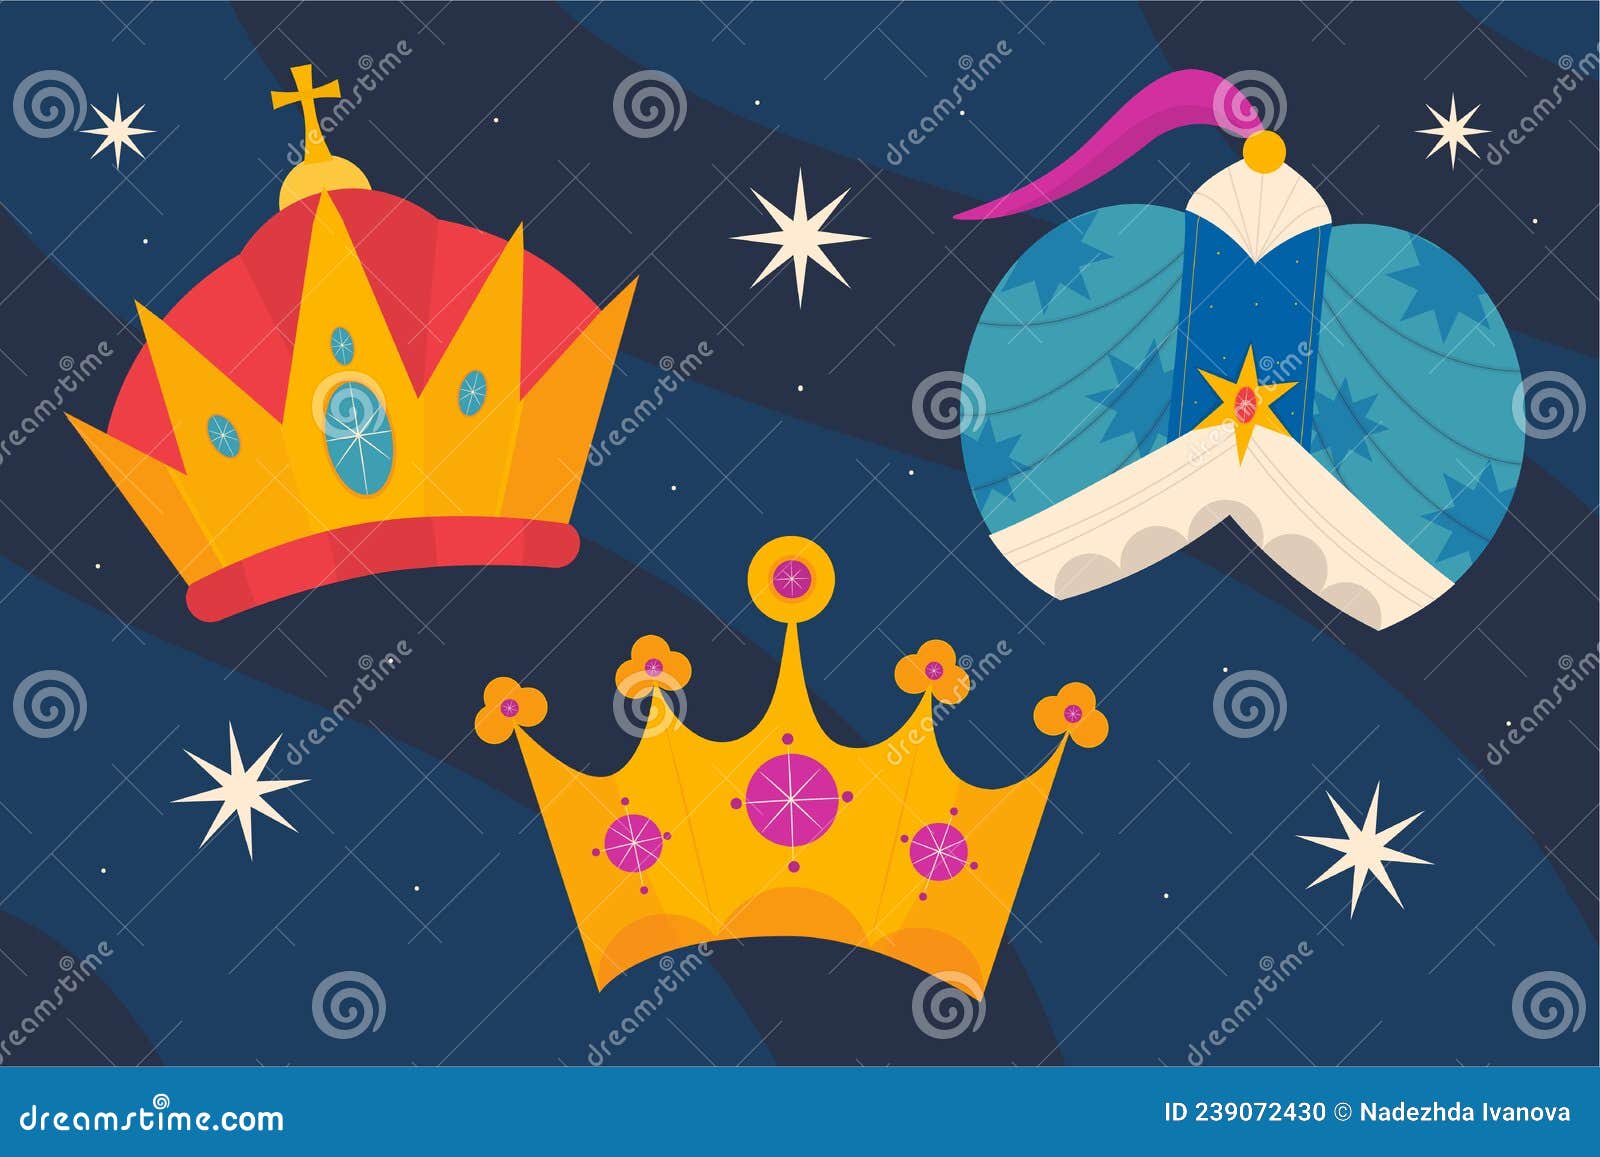 flat reyes magos crowns set  .